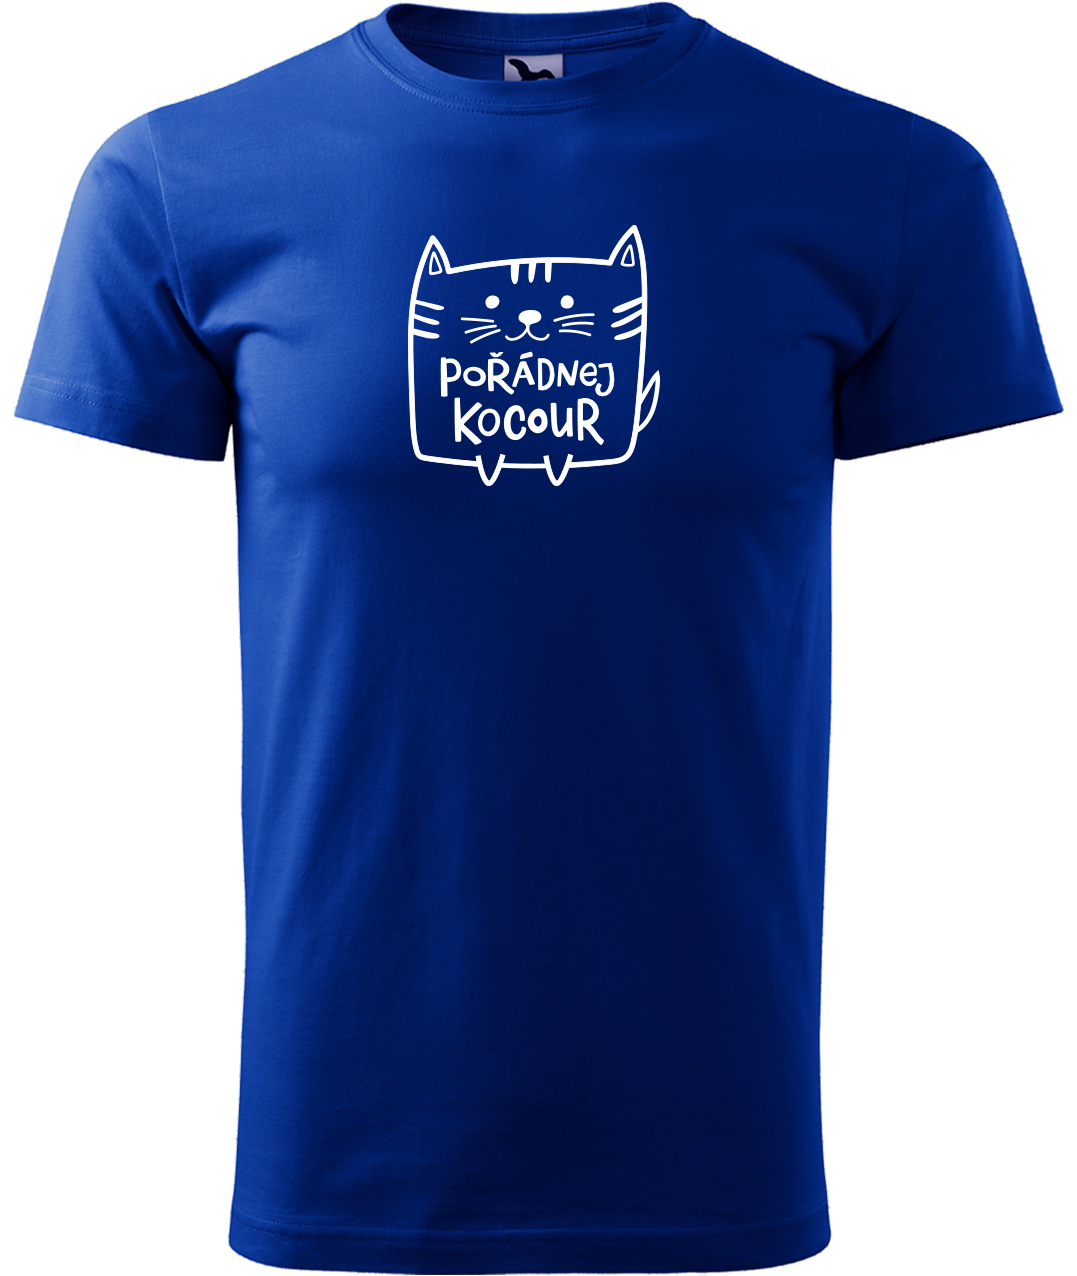 Pánské tričko s kočkou - Pořádnej kocour Velikost: L, Barva: Královská modrá (05)